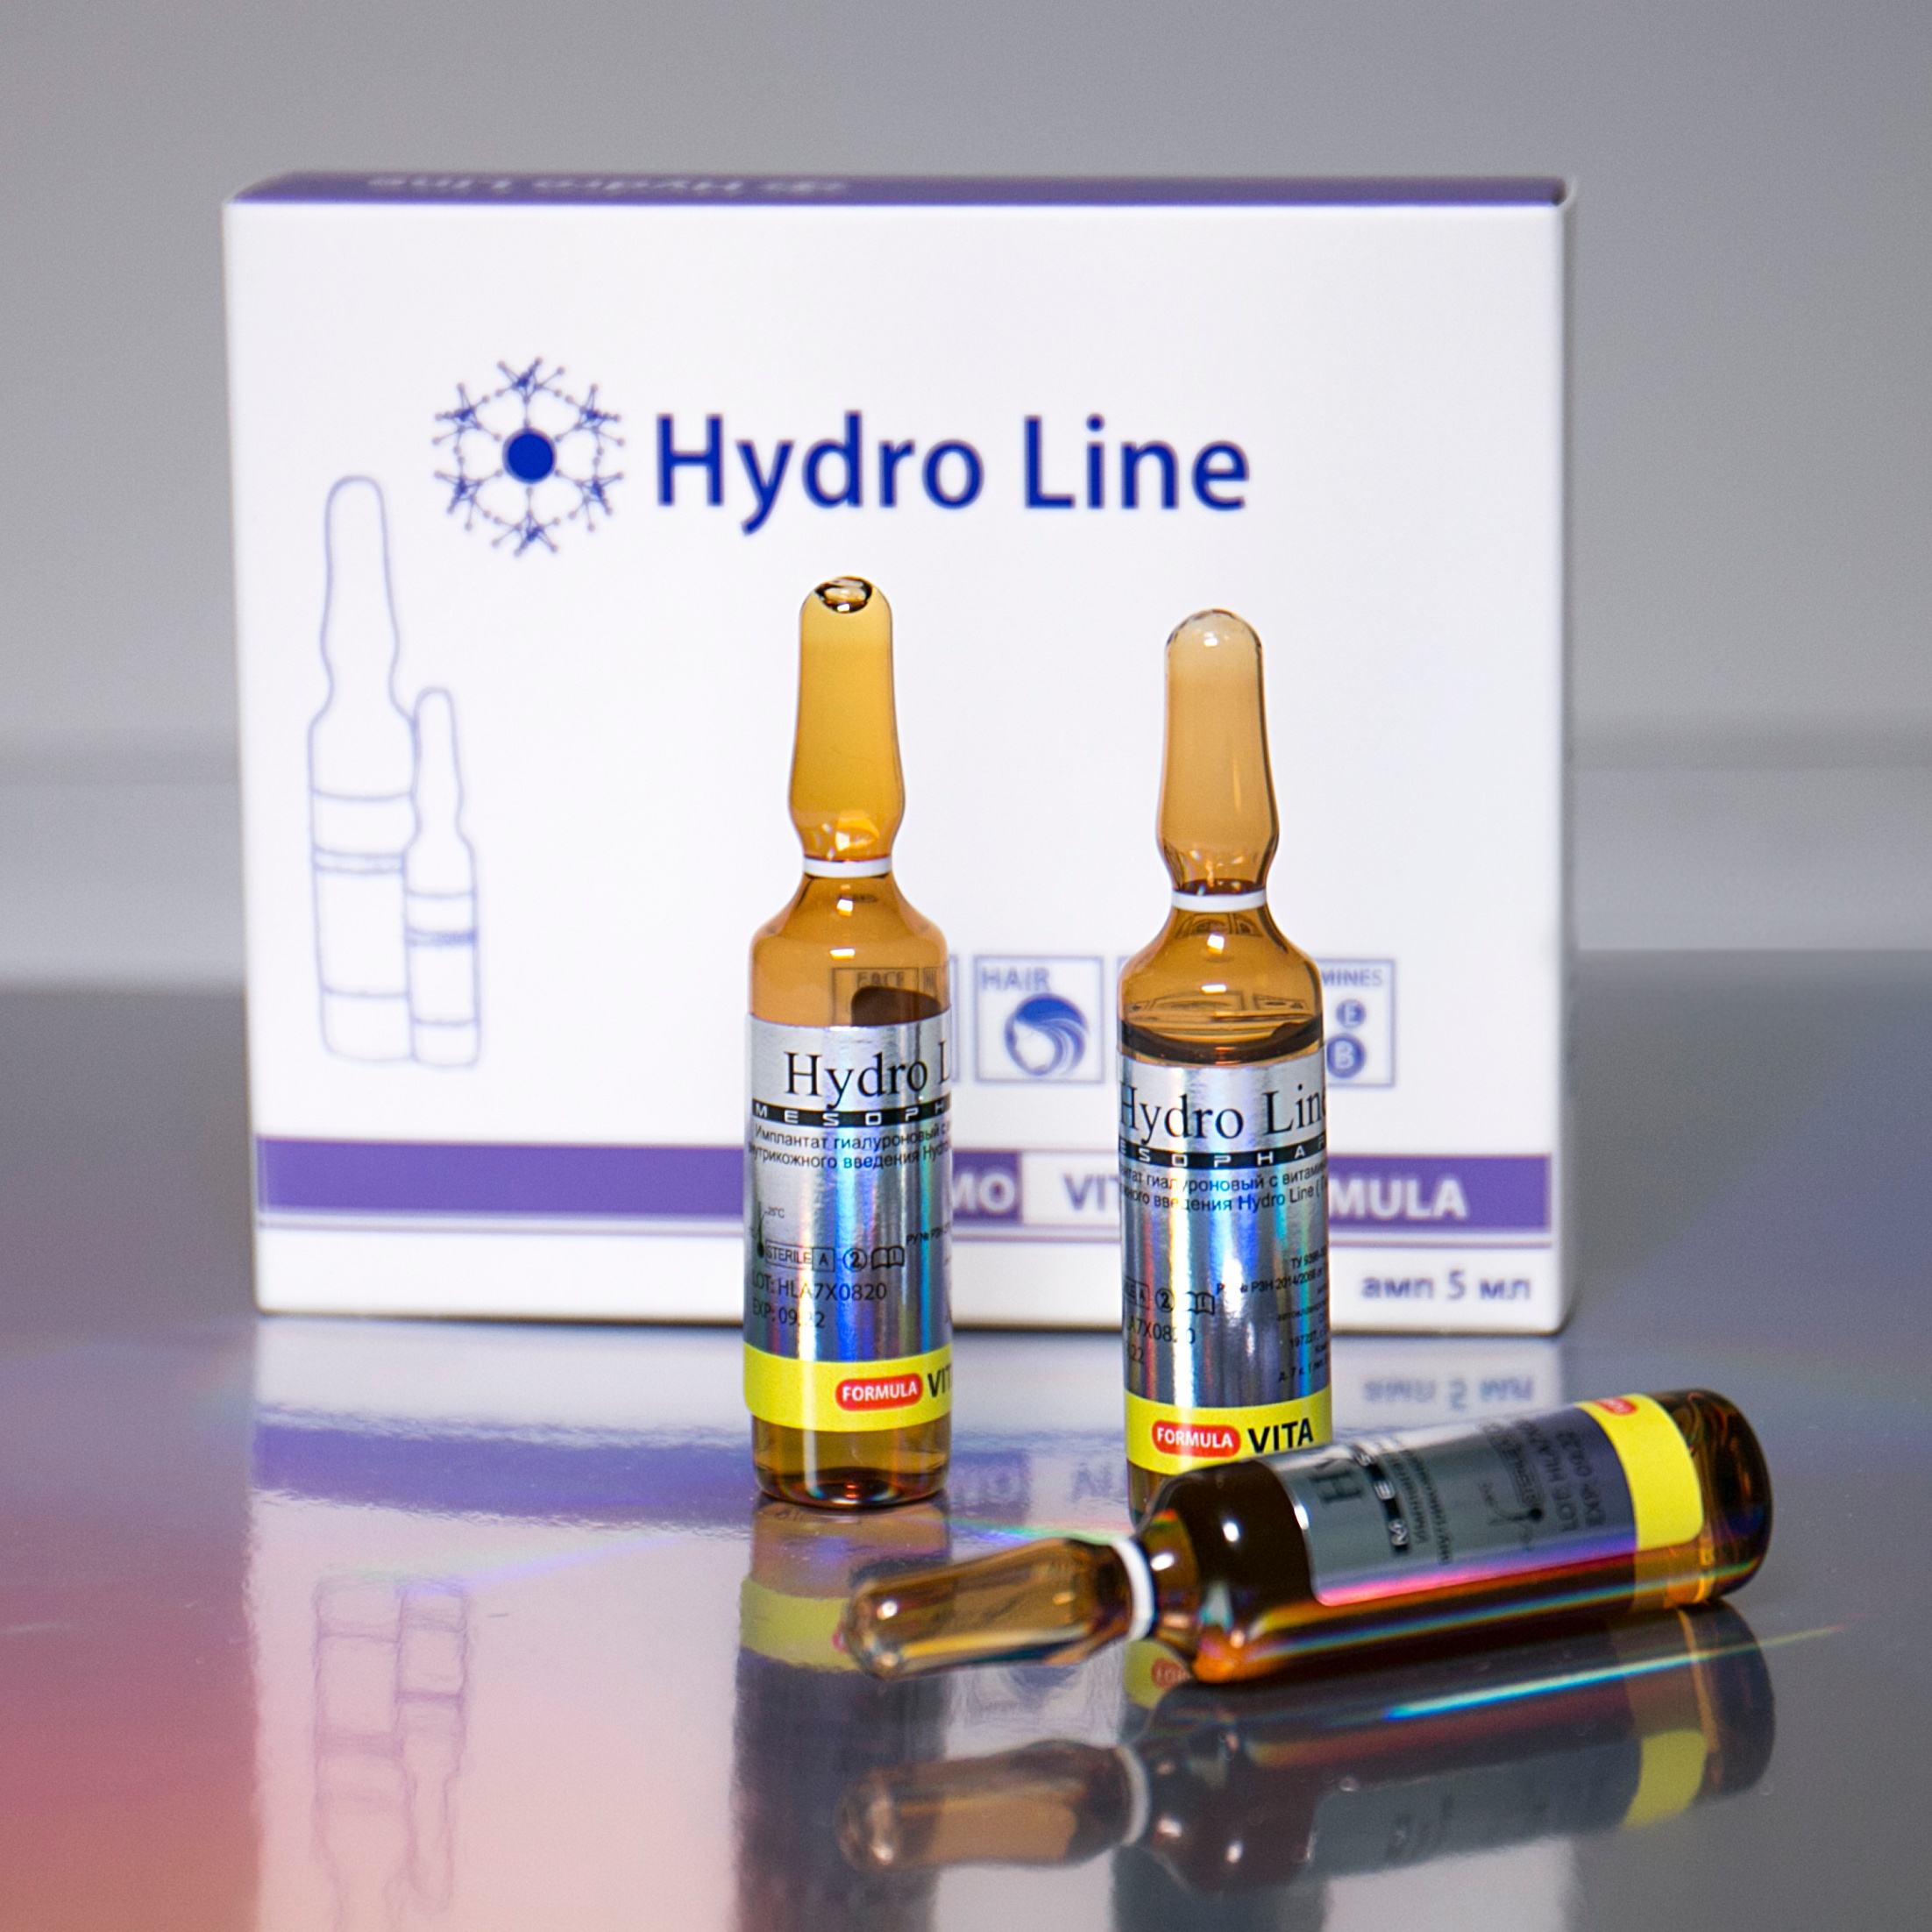 Биоревитализация препаратом Hydro Line Peptide (2 мл)